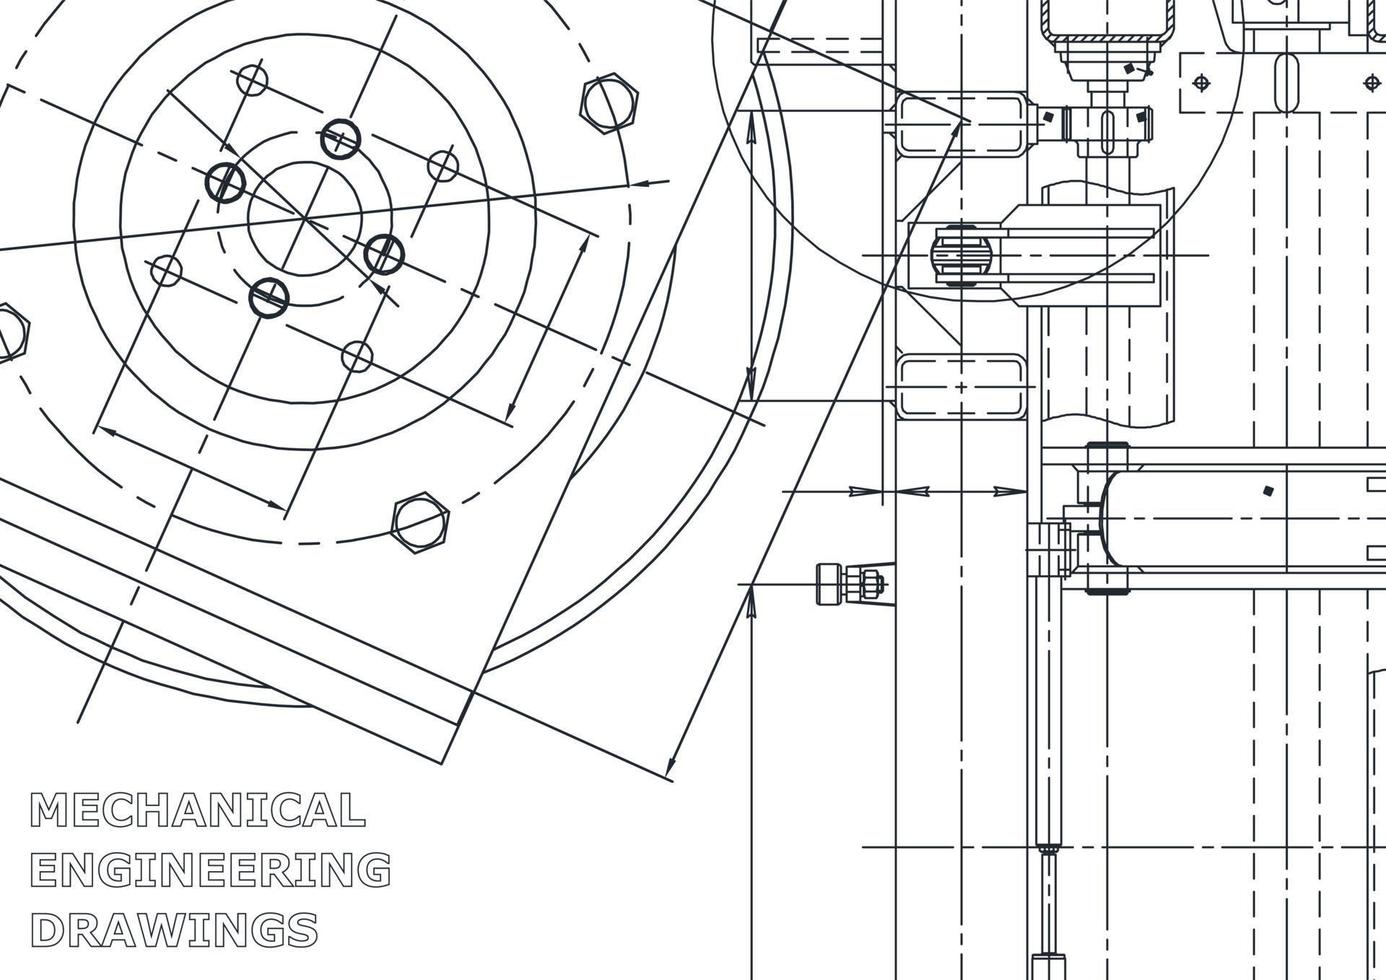 Vektor-Engineering-Illustration. Computergestützte Konstruktionssysteme. Instrumentenbau. technische Illustrationen vektor